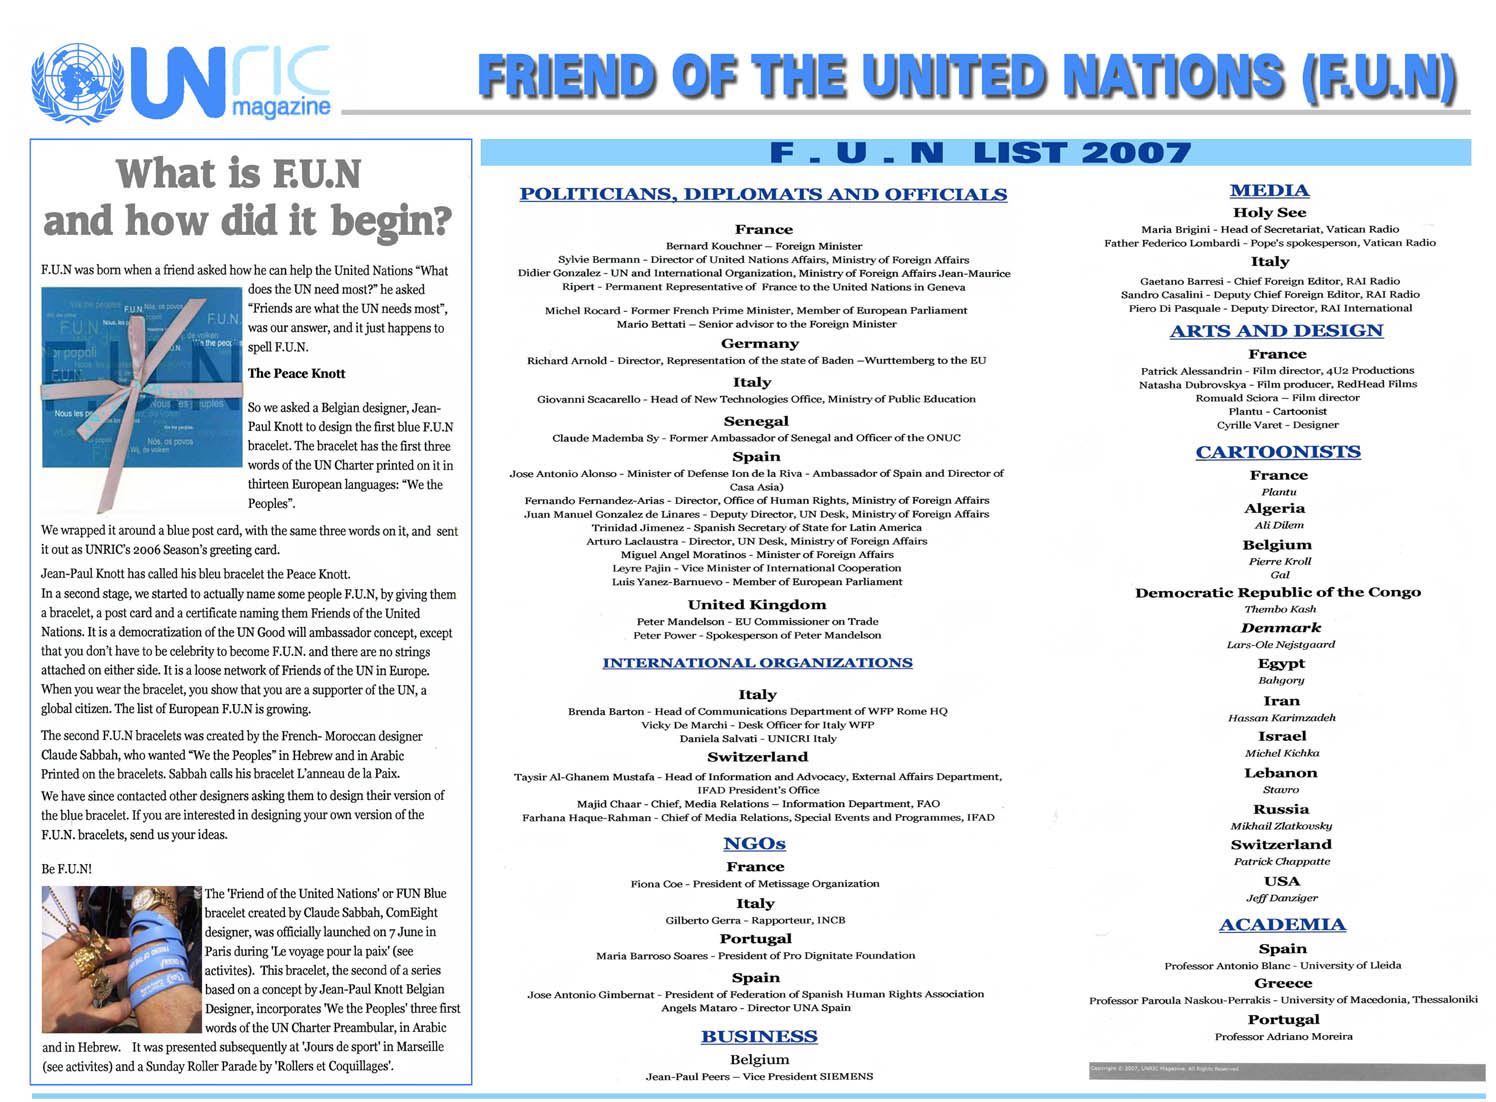 F.U.N - Friend of the United Nations